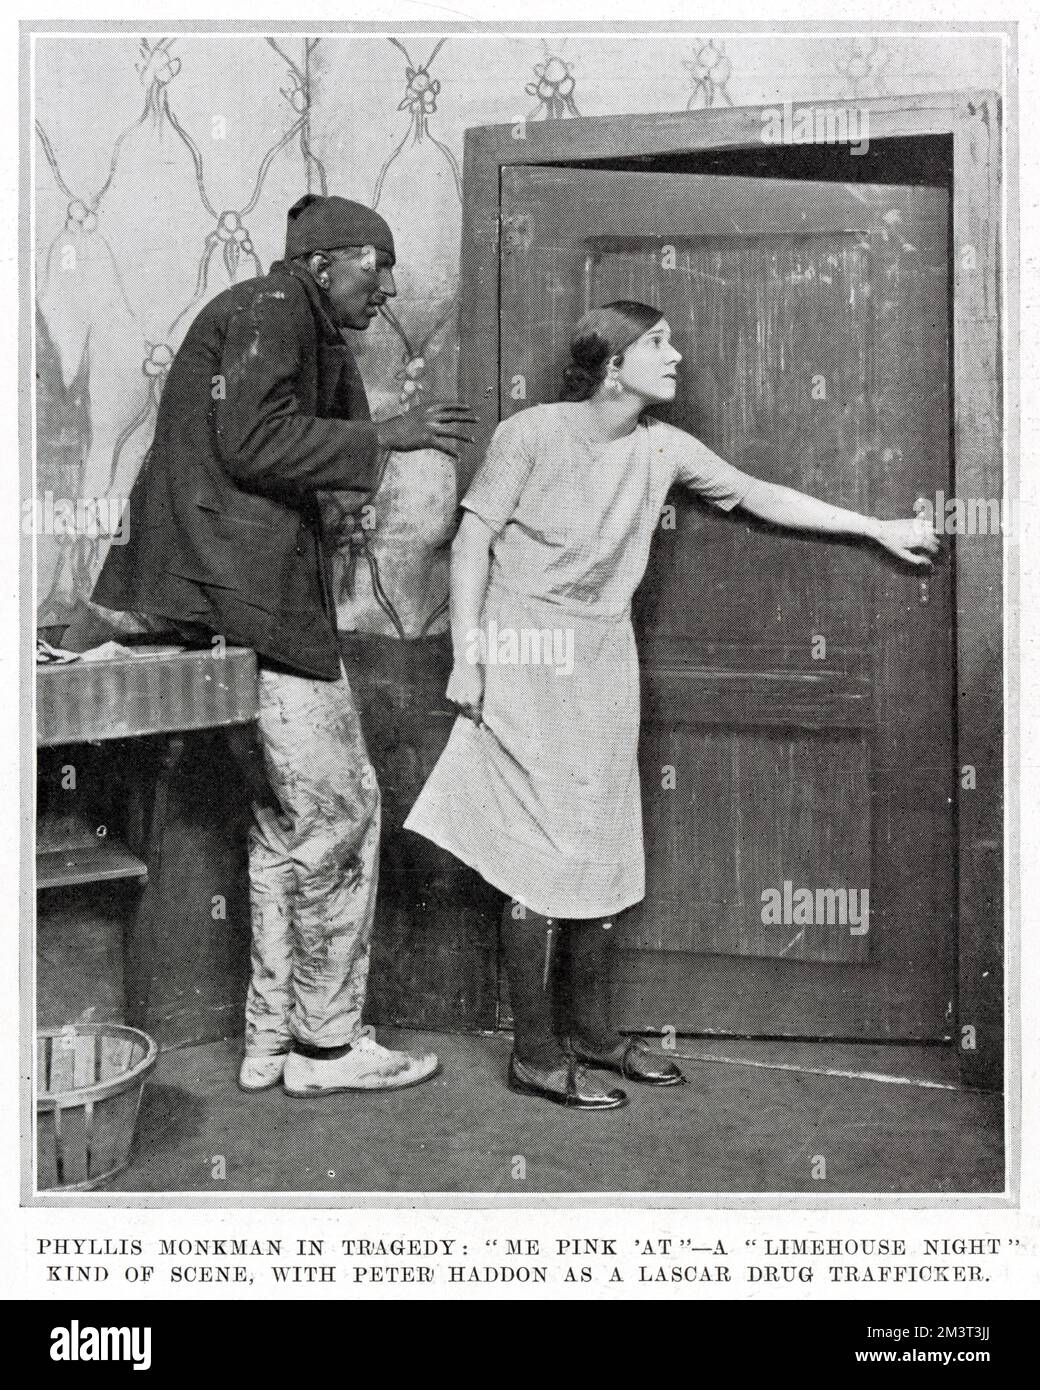 Eine Skizze in der Charlot's Revue von 1924 im Prince of Wales's Theatre, die von den illustrierten Sporting & Dramatical News als eine Art „Limehouse Nights“-Skizze beschrieben wird, in der Phyllis Monkman und Peter Haddon als Drogenhändler in Lascar auftreten. Stockfoto